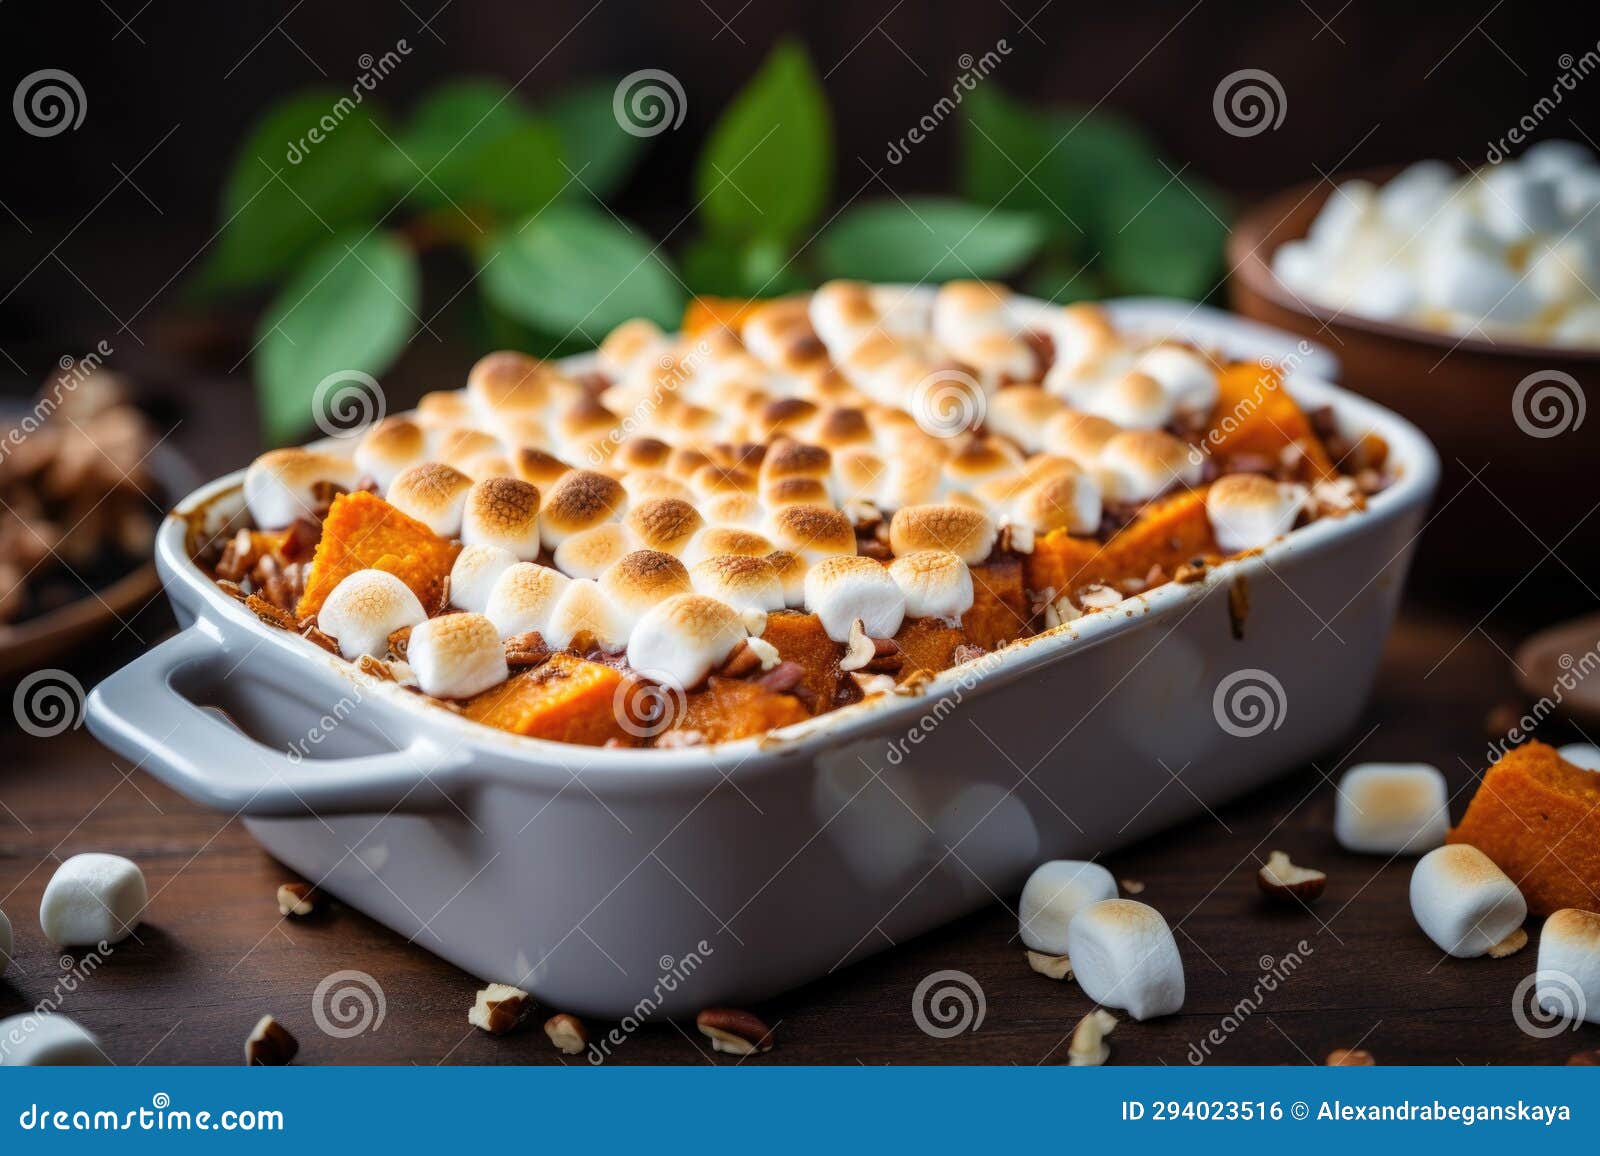 Sweet Potato Casserole with Marshmallows on Top Stock Illustration ...